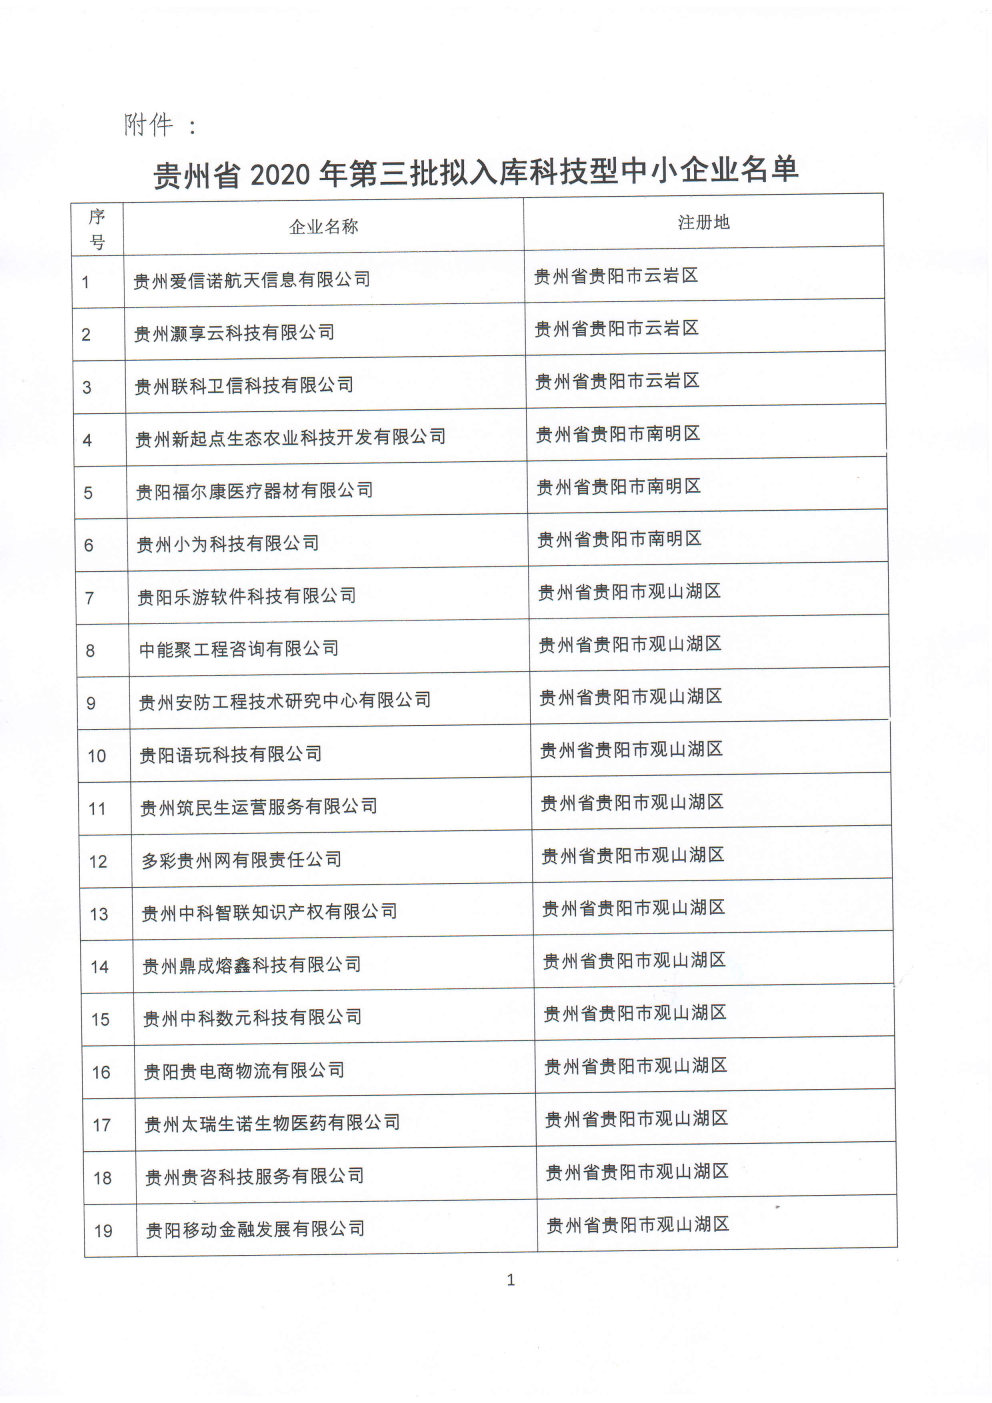 附件：贵州省2020年第三批拟入库科技型中小企业名单_Page1_Image1.jpg